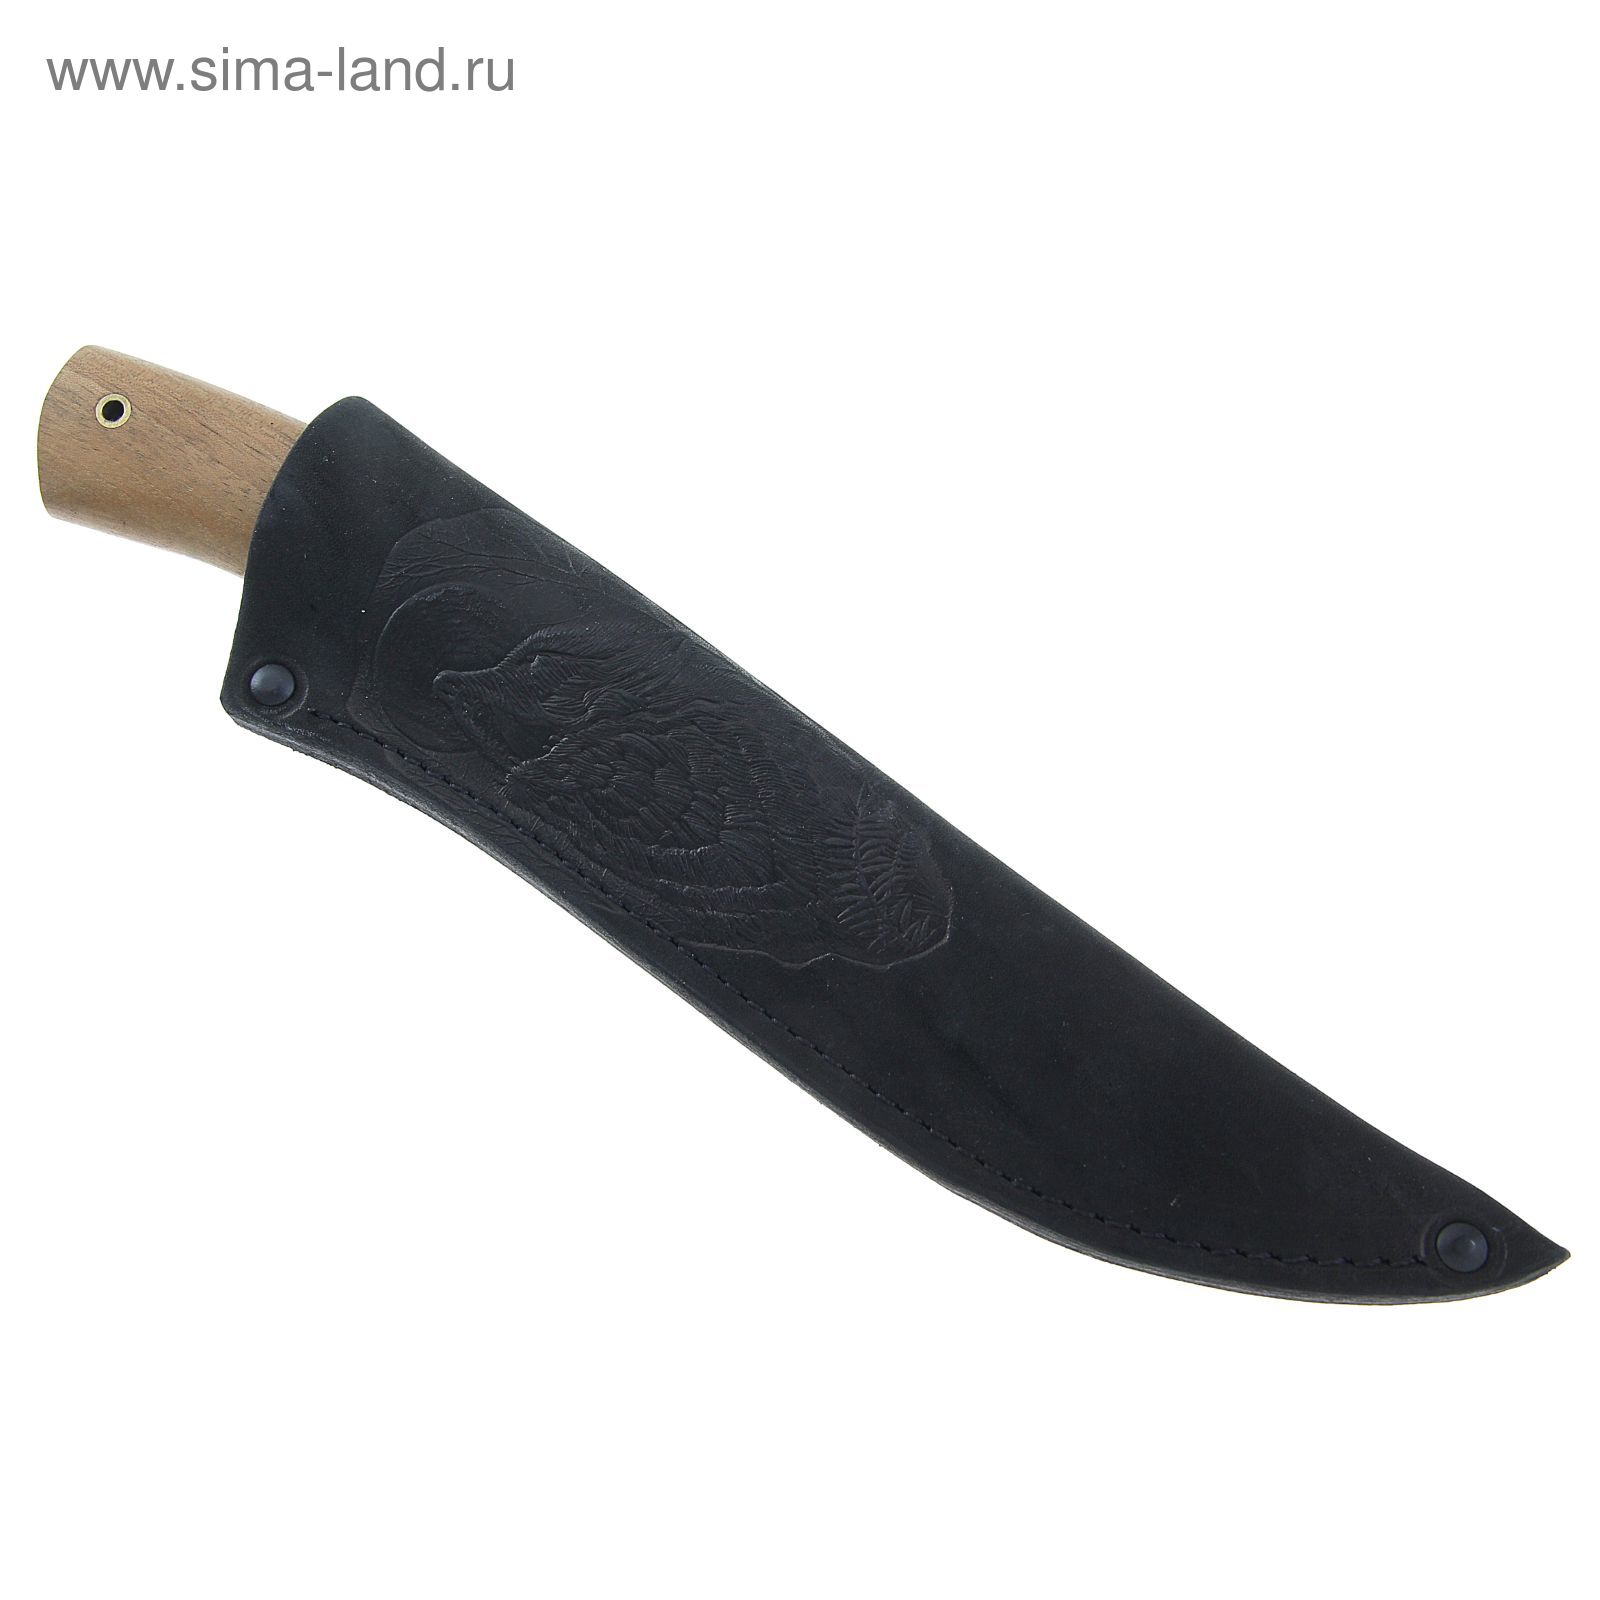 Нож нескладной "Смерч" СА-2, г.Павлово, сталь 65Х13, рукоять-орех